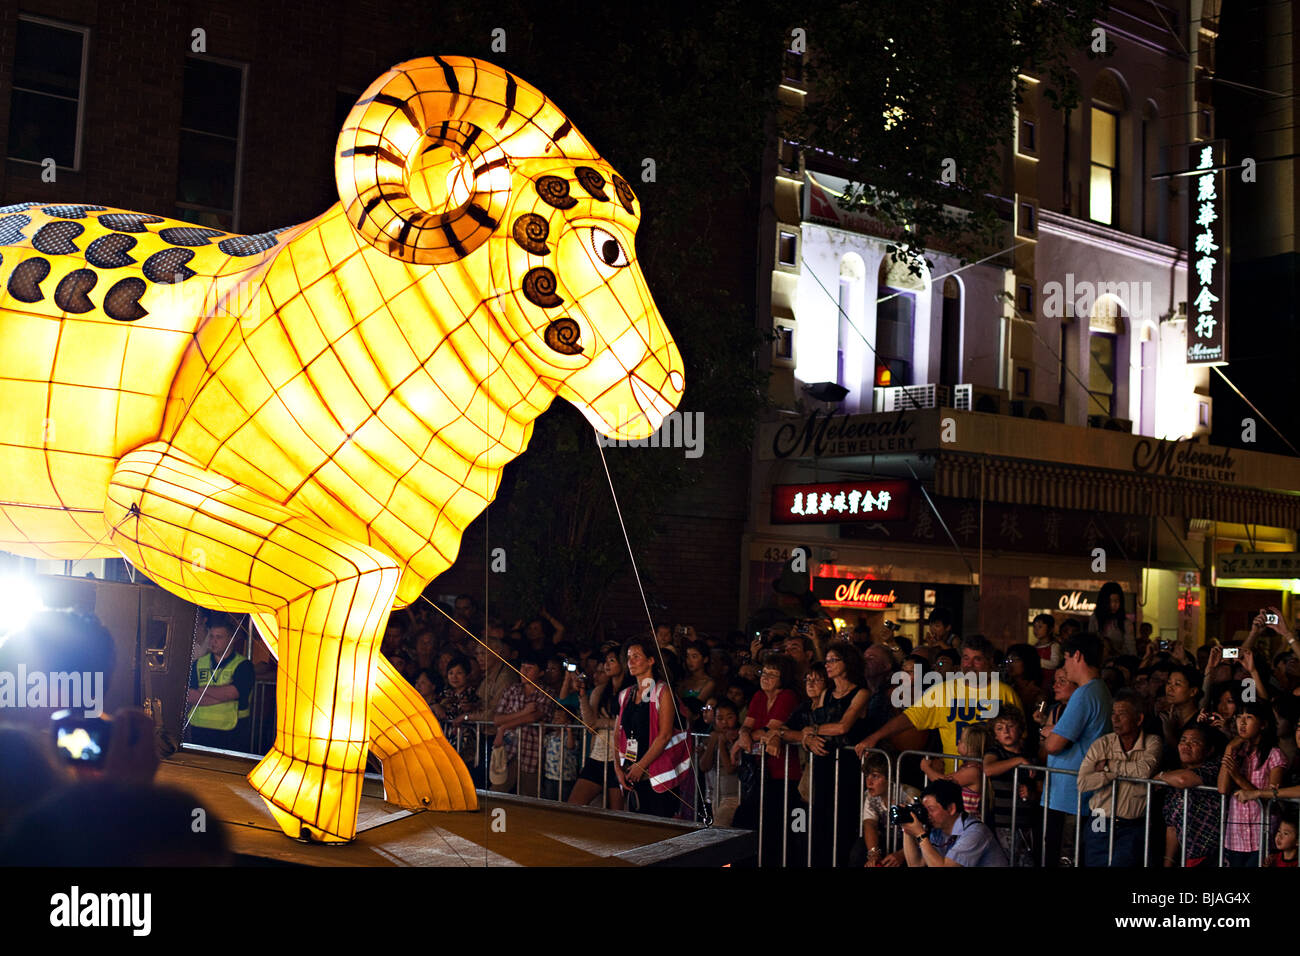 Chinese New Year celebrations, Sydney, Australia Stock Photo Alamy